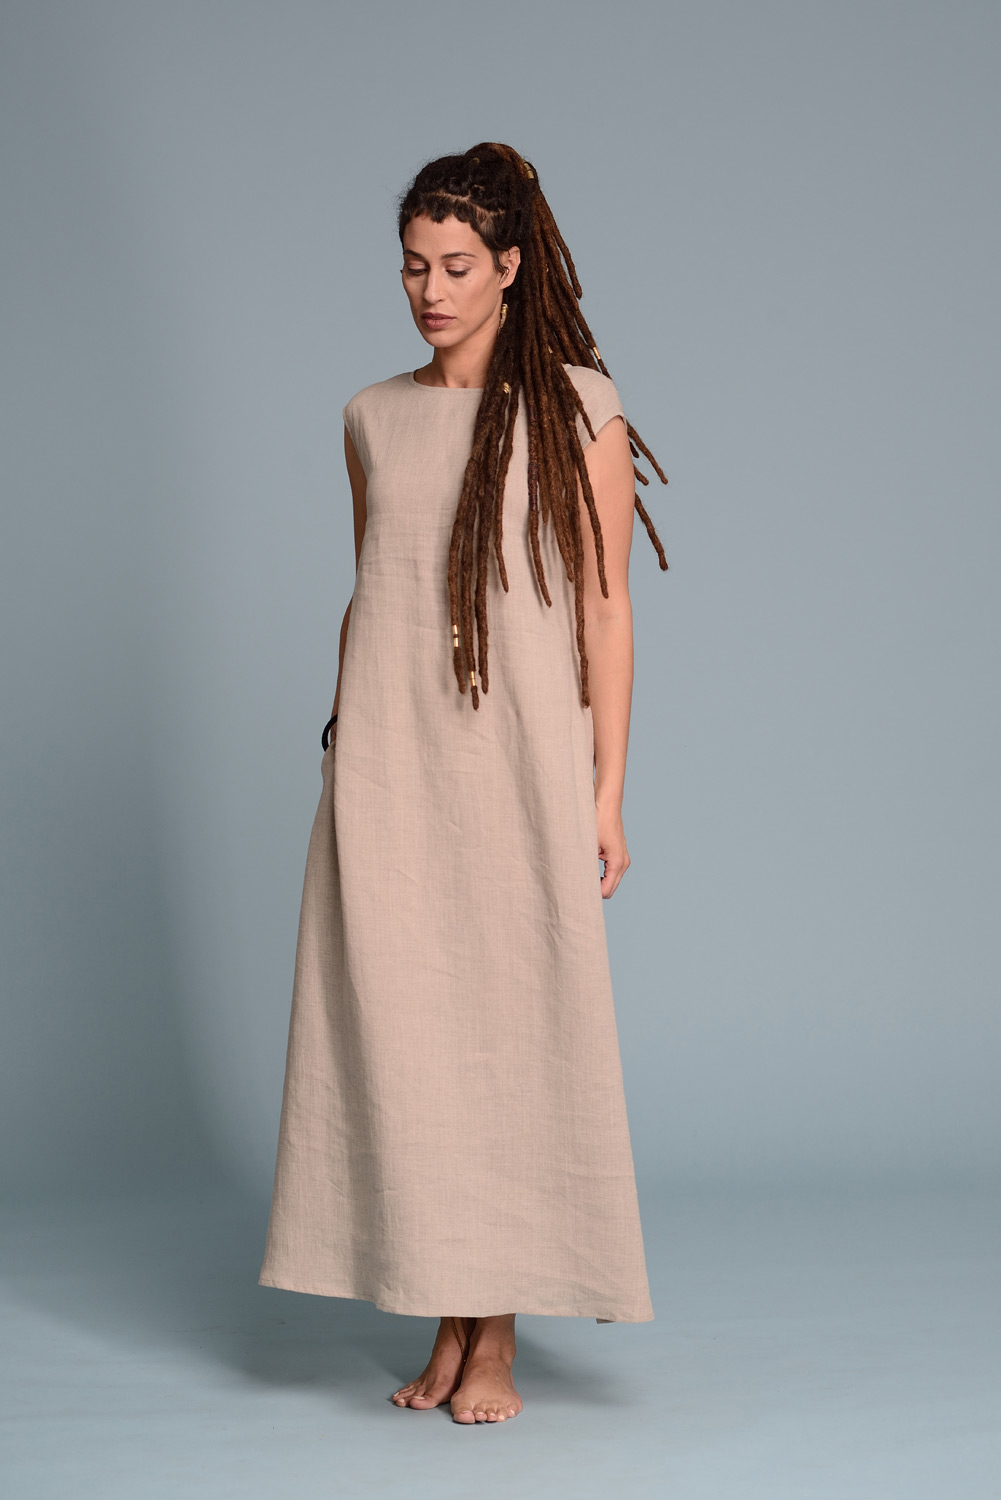 flax linen dress